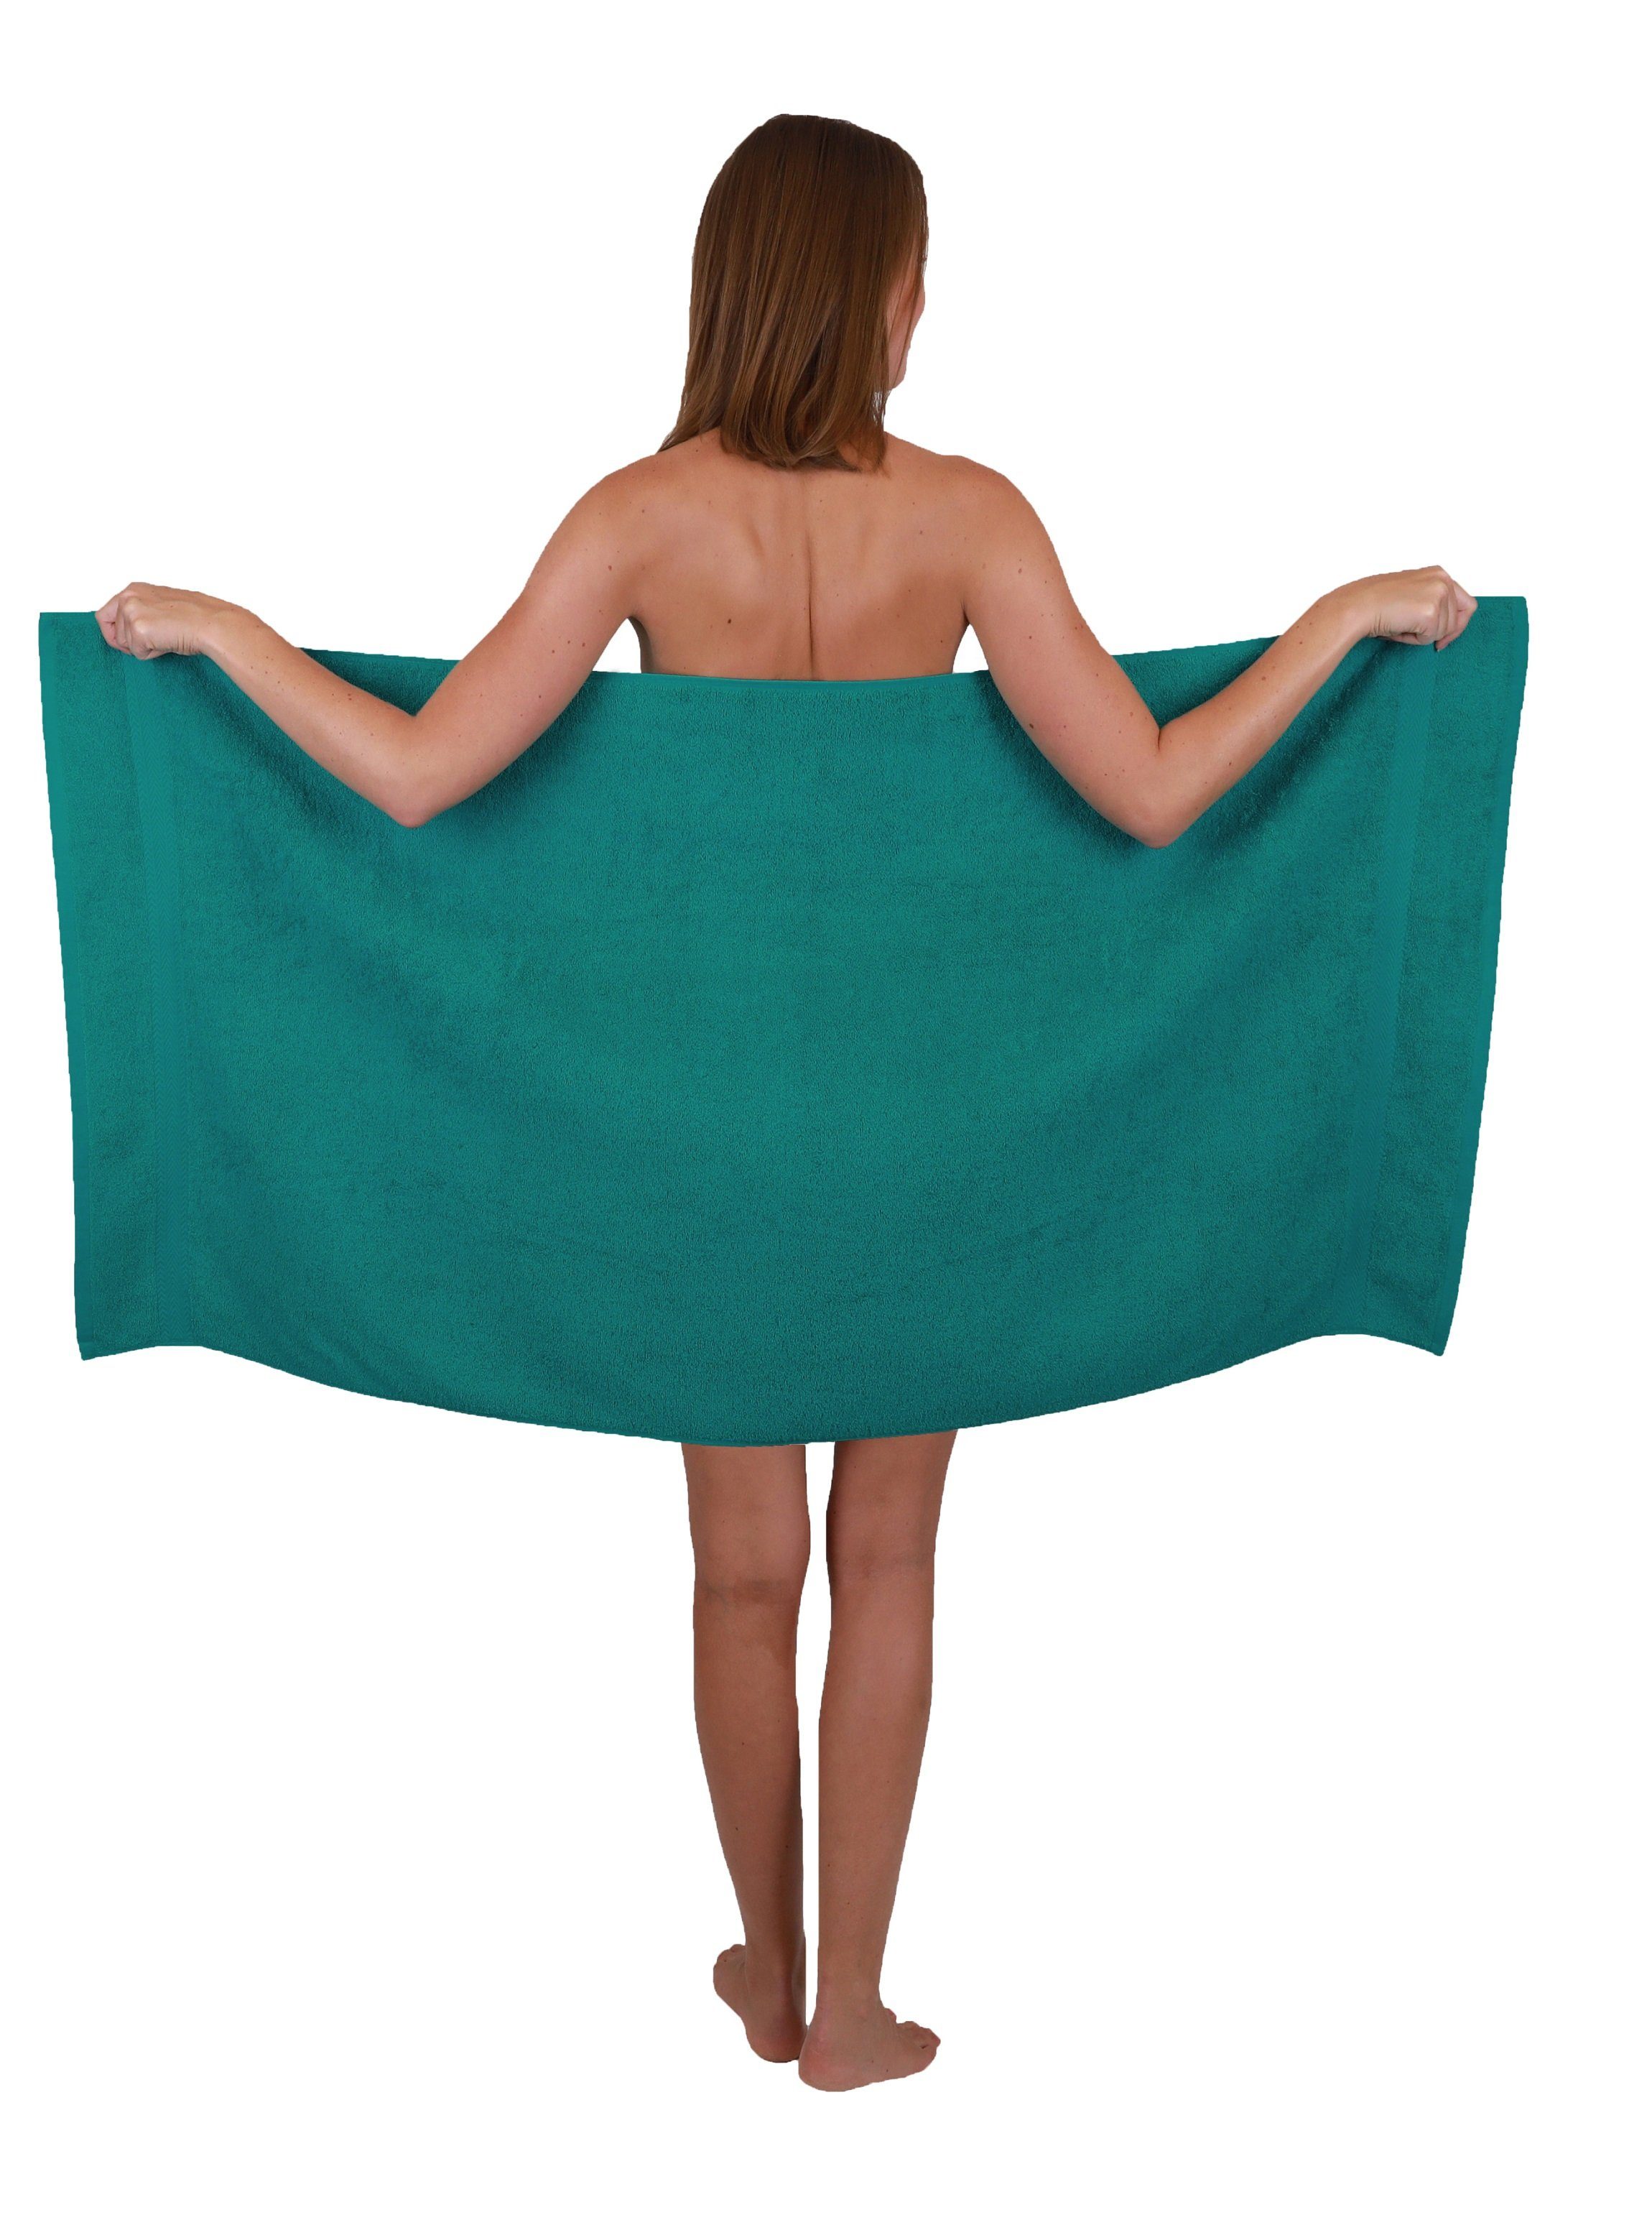 & 10-tlg. Dunkelbraun, Handtuch-Set Premium Baumwolle Farbe Smaragdgrün 100% Betz Set Handtuch